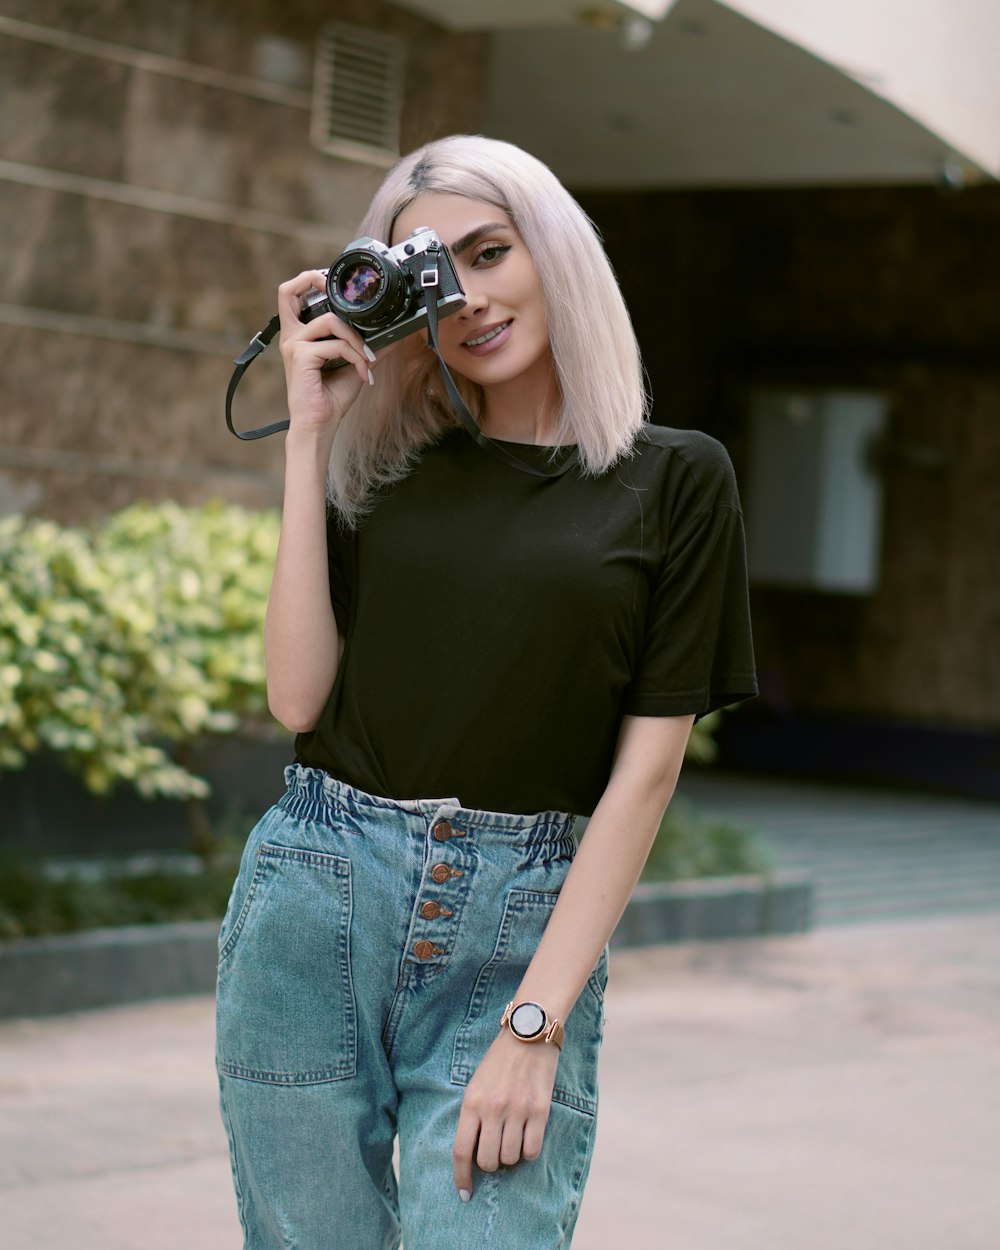 Femme en T-shirt noir et jean bleu tenant un appareil photo reflex numérique noir